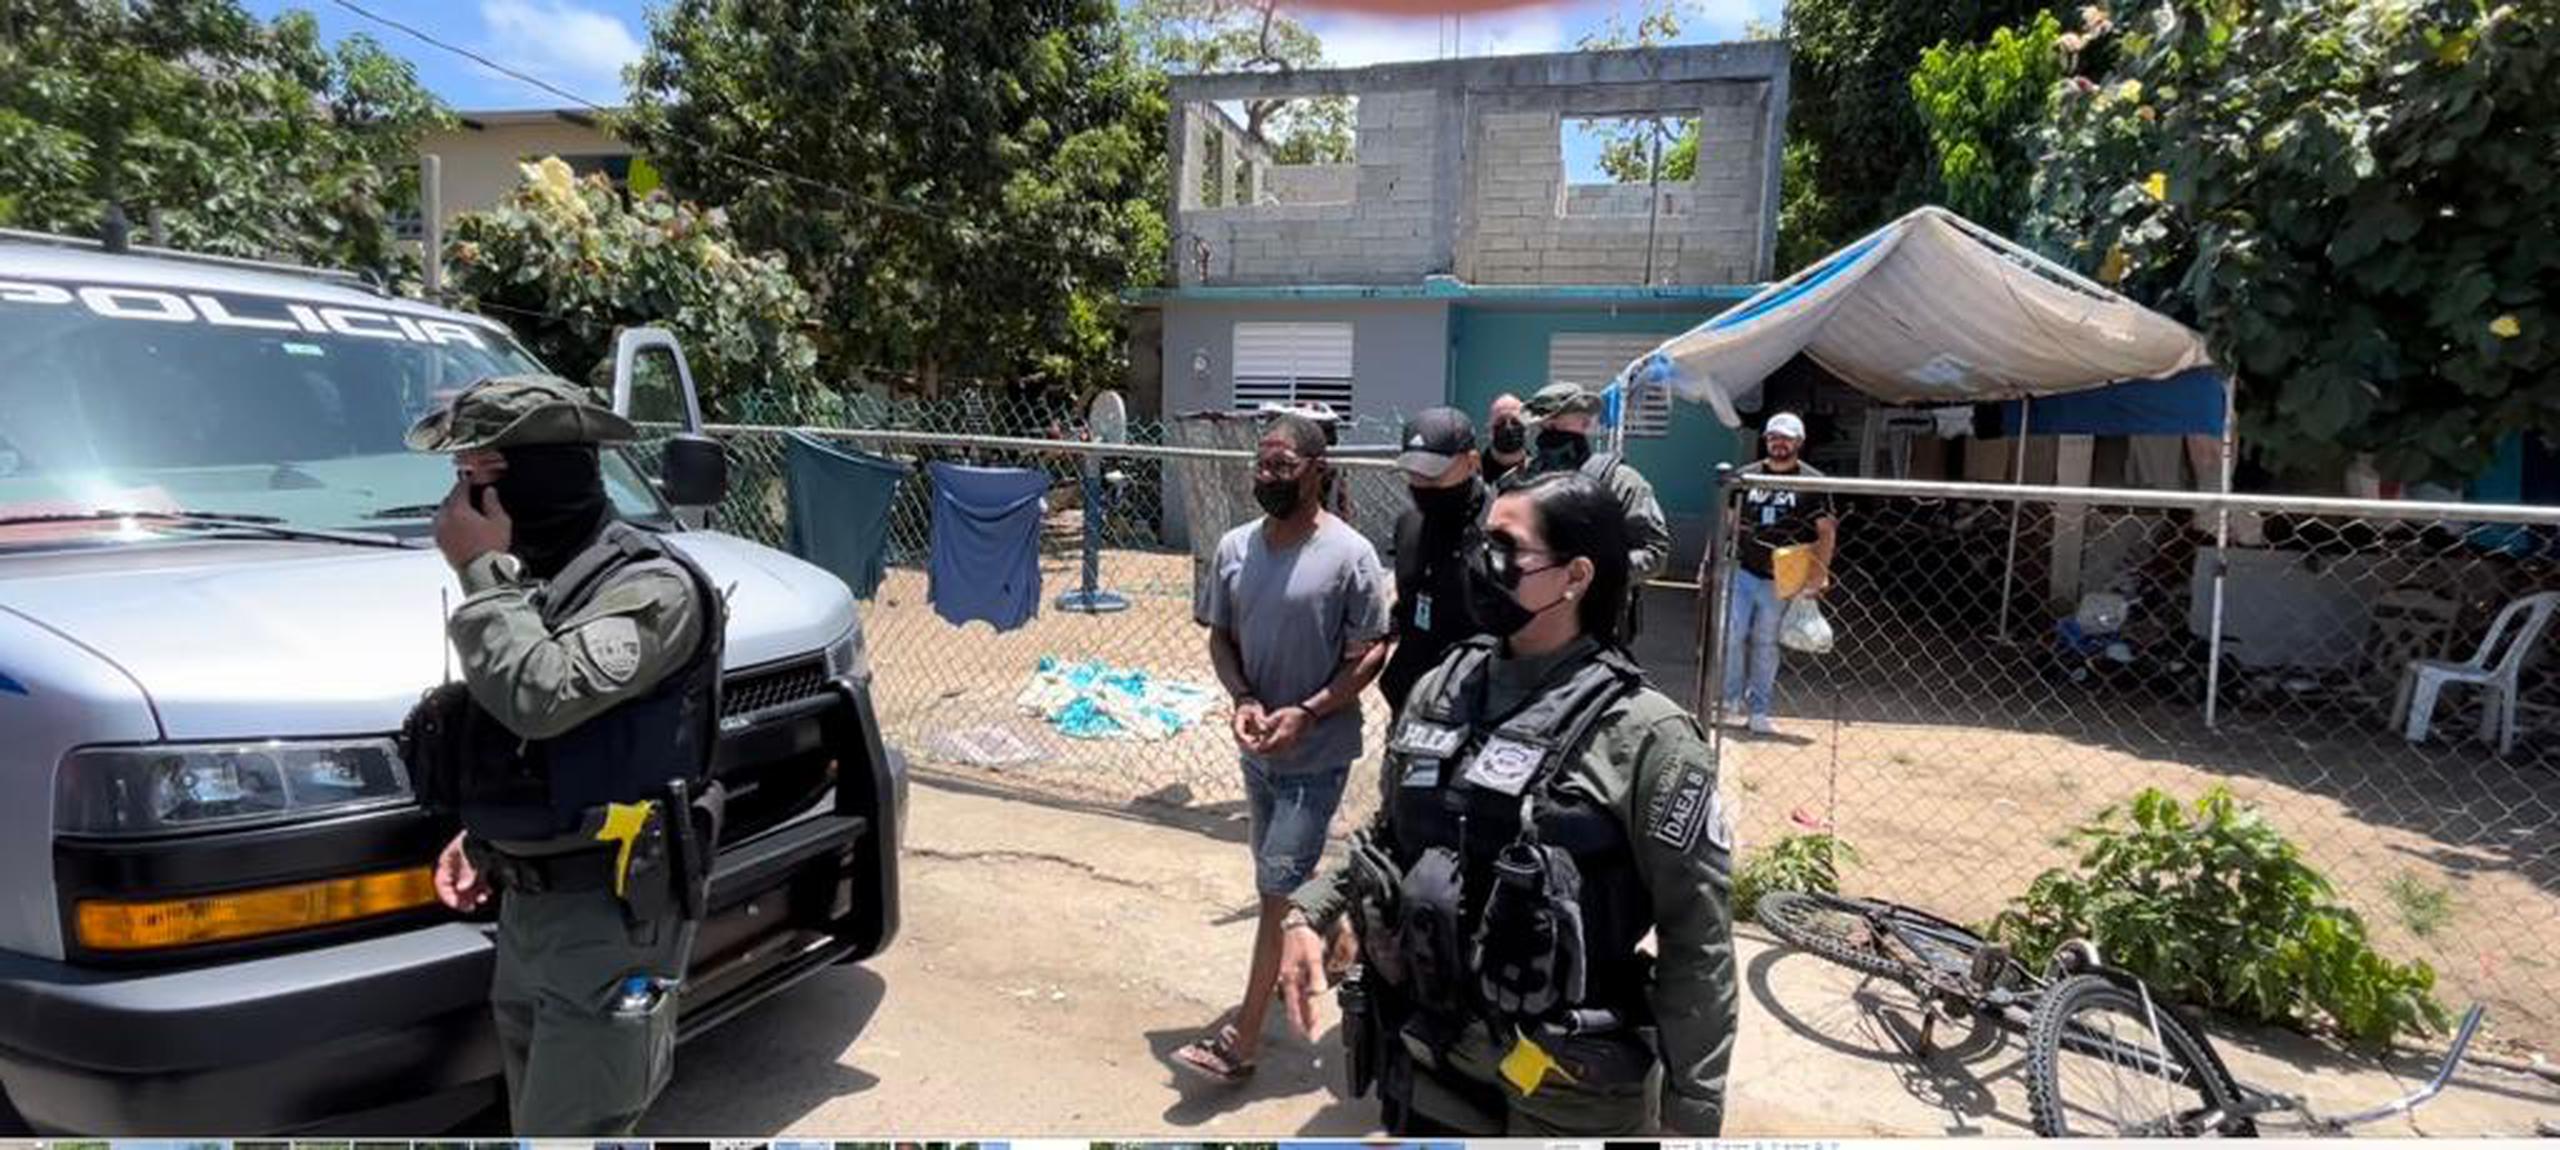 Seis adultos fueron arrestados durante los allanamientos de dos residencias en el sector Villa Cañona, en Loíza, tras ocupar un rifle, balas y drogas.